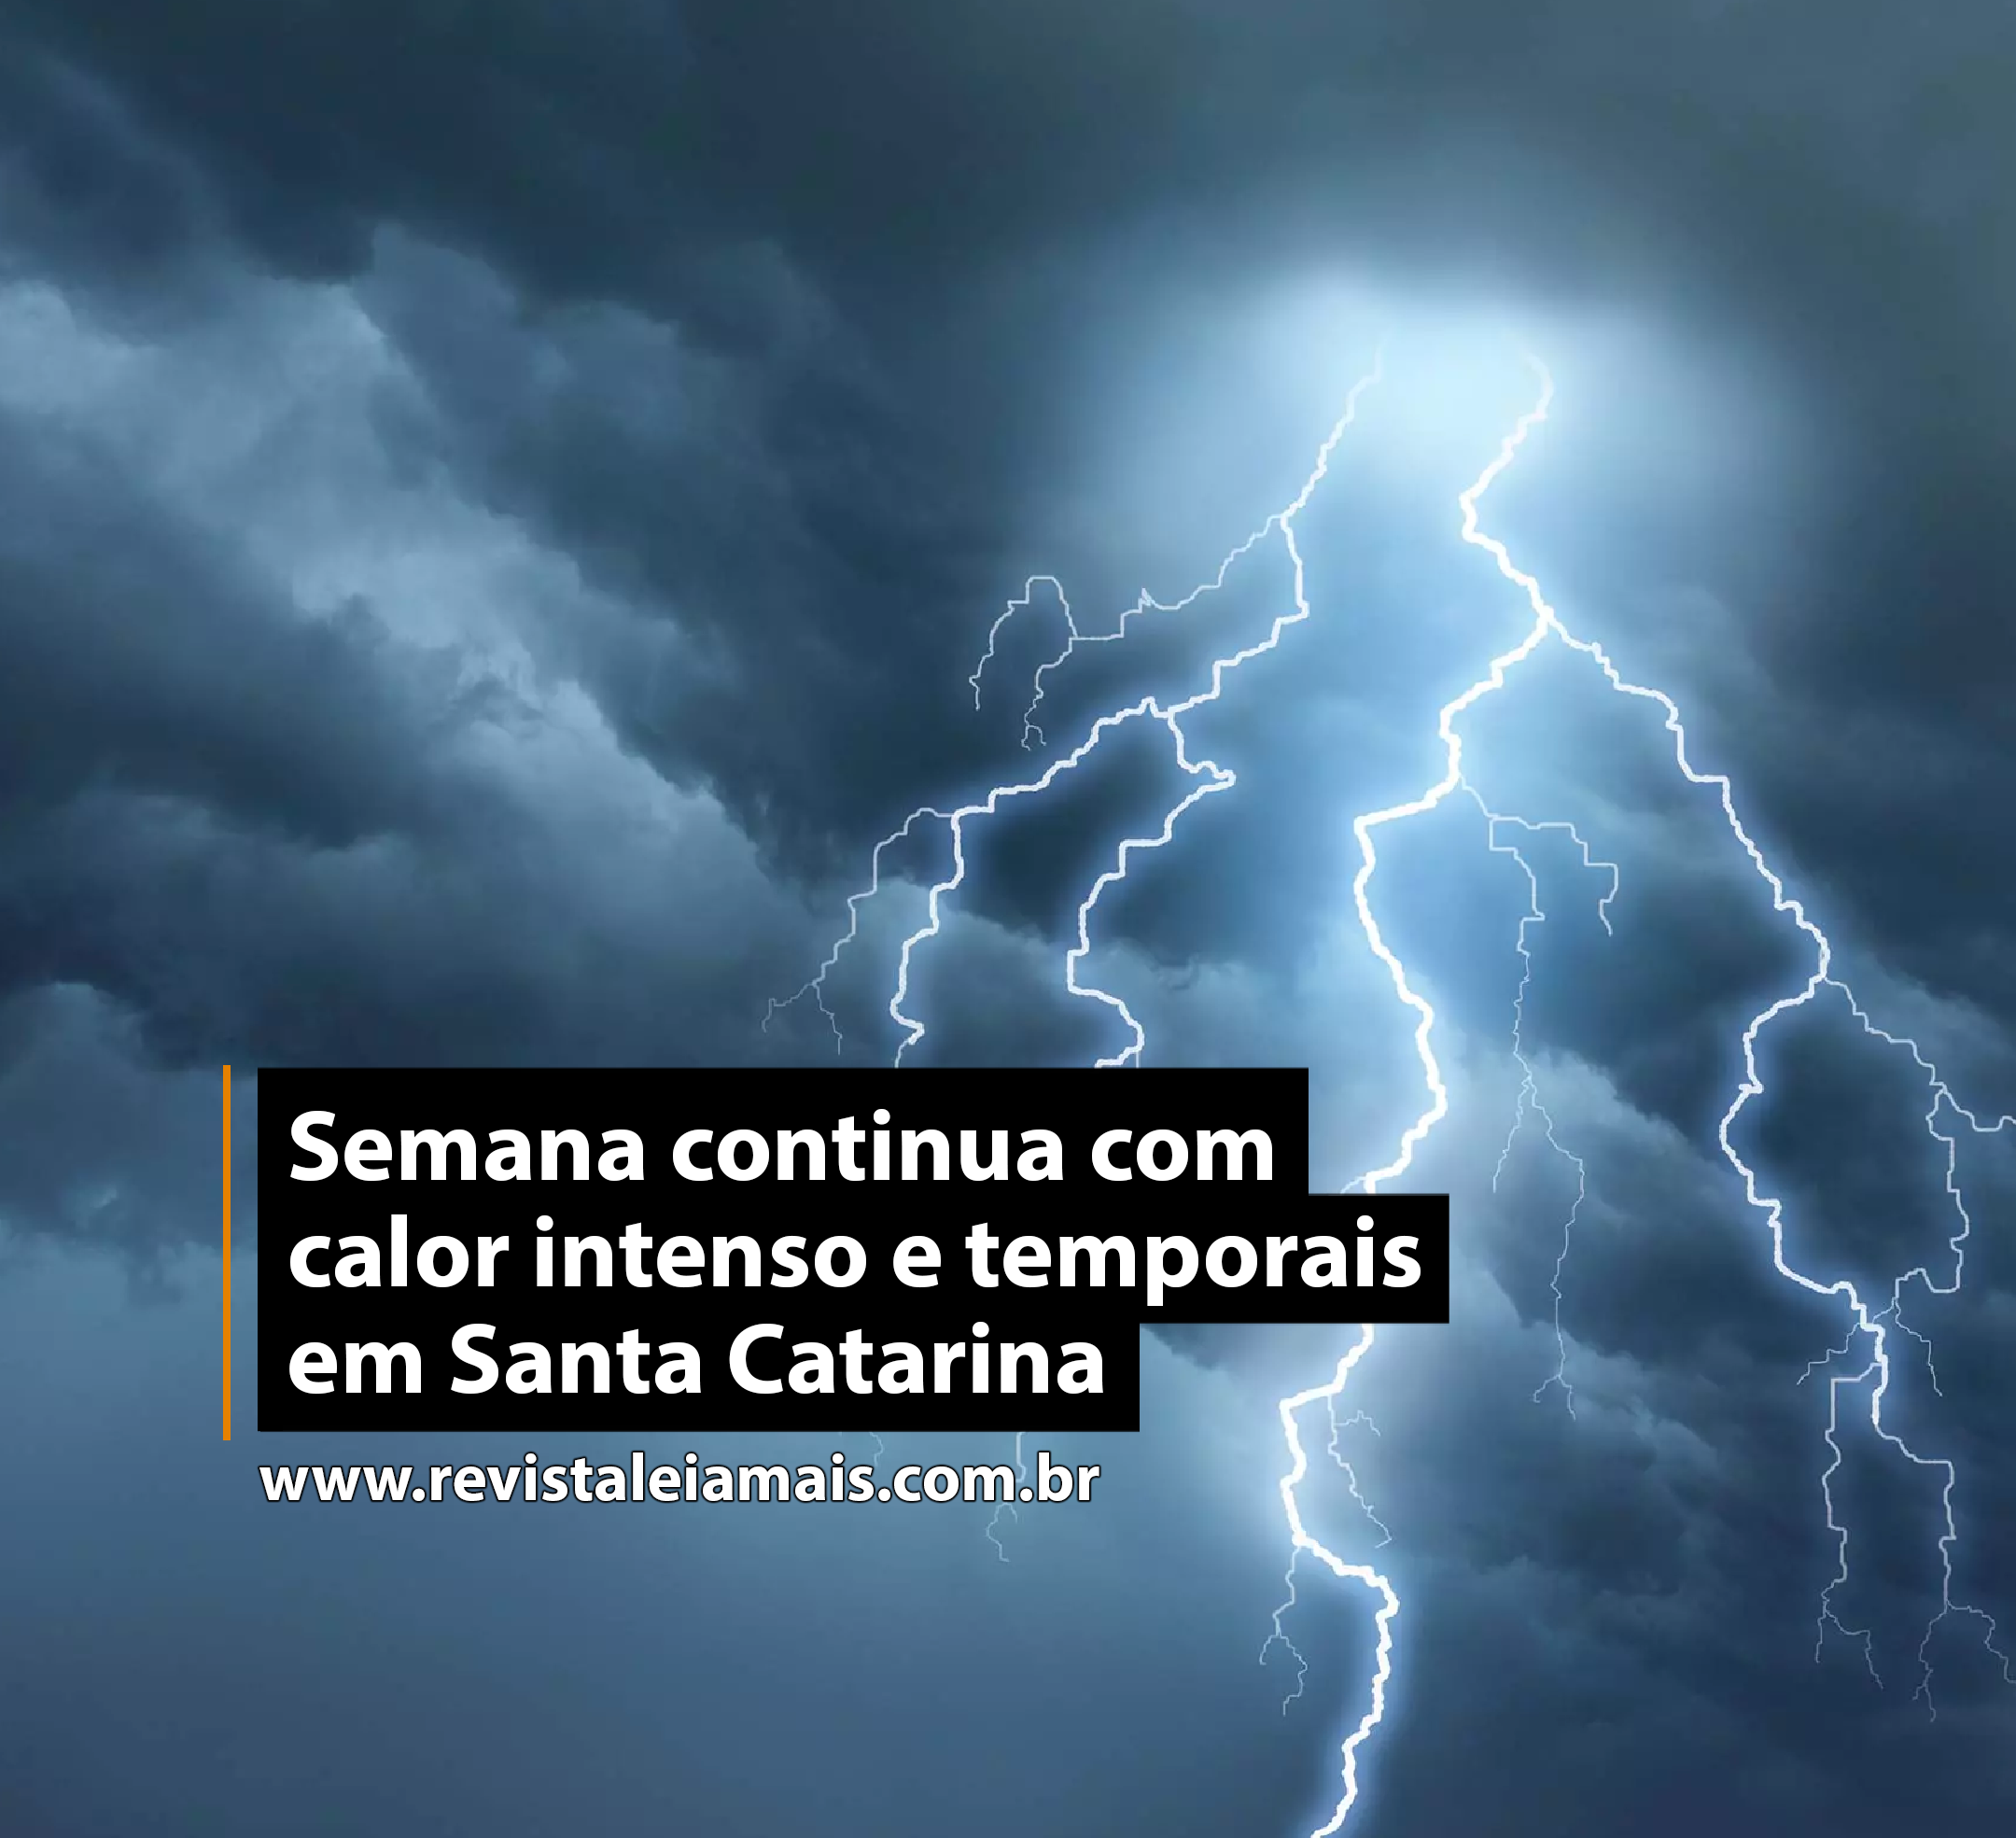 Semana continua com calor intenso e temporais em Santa Catarina